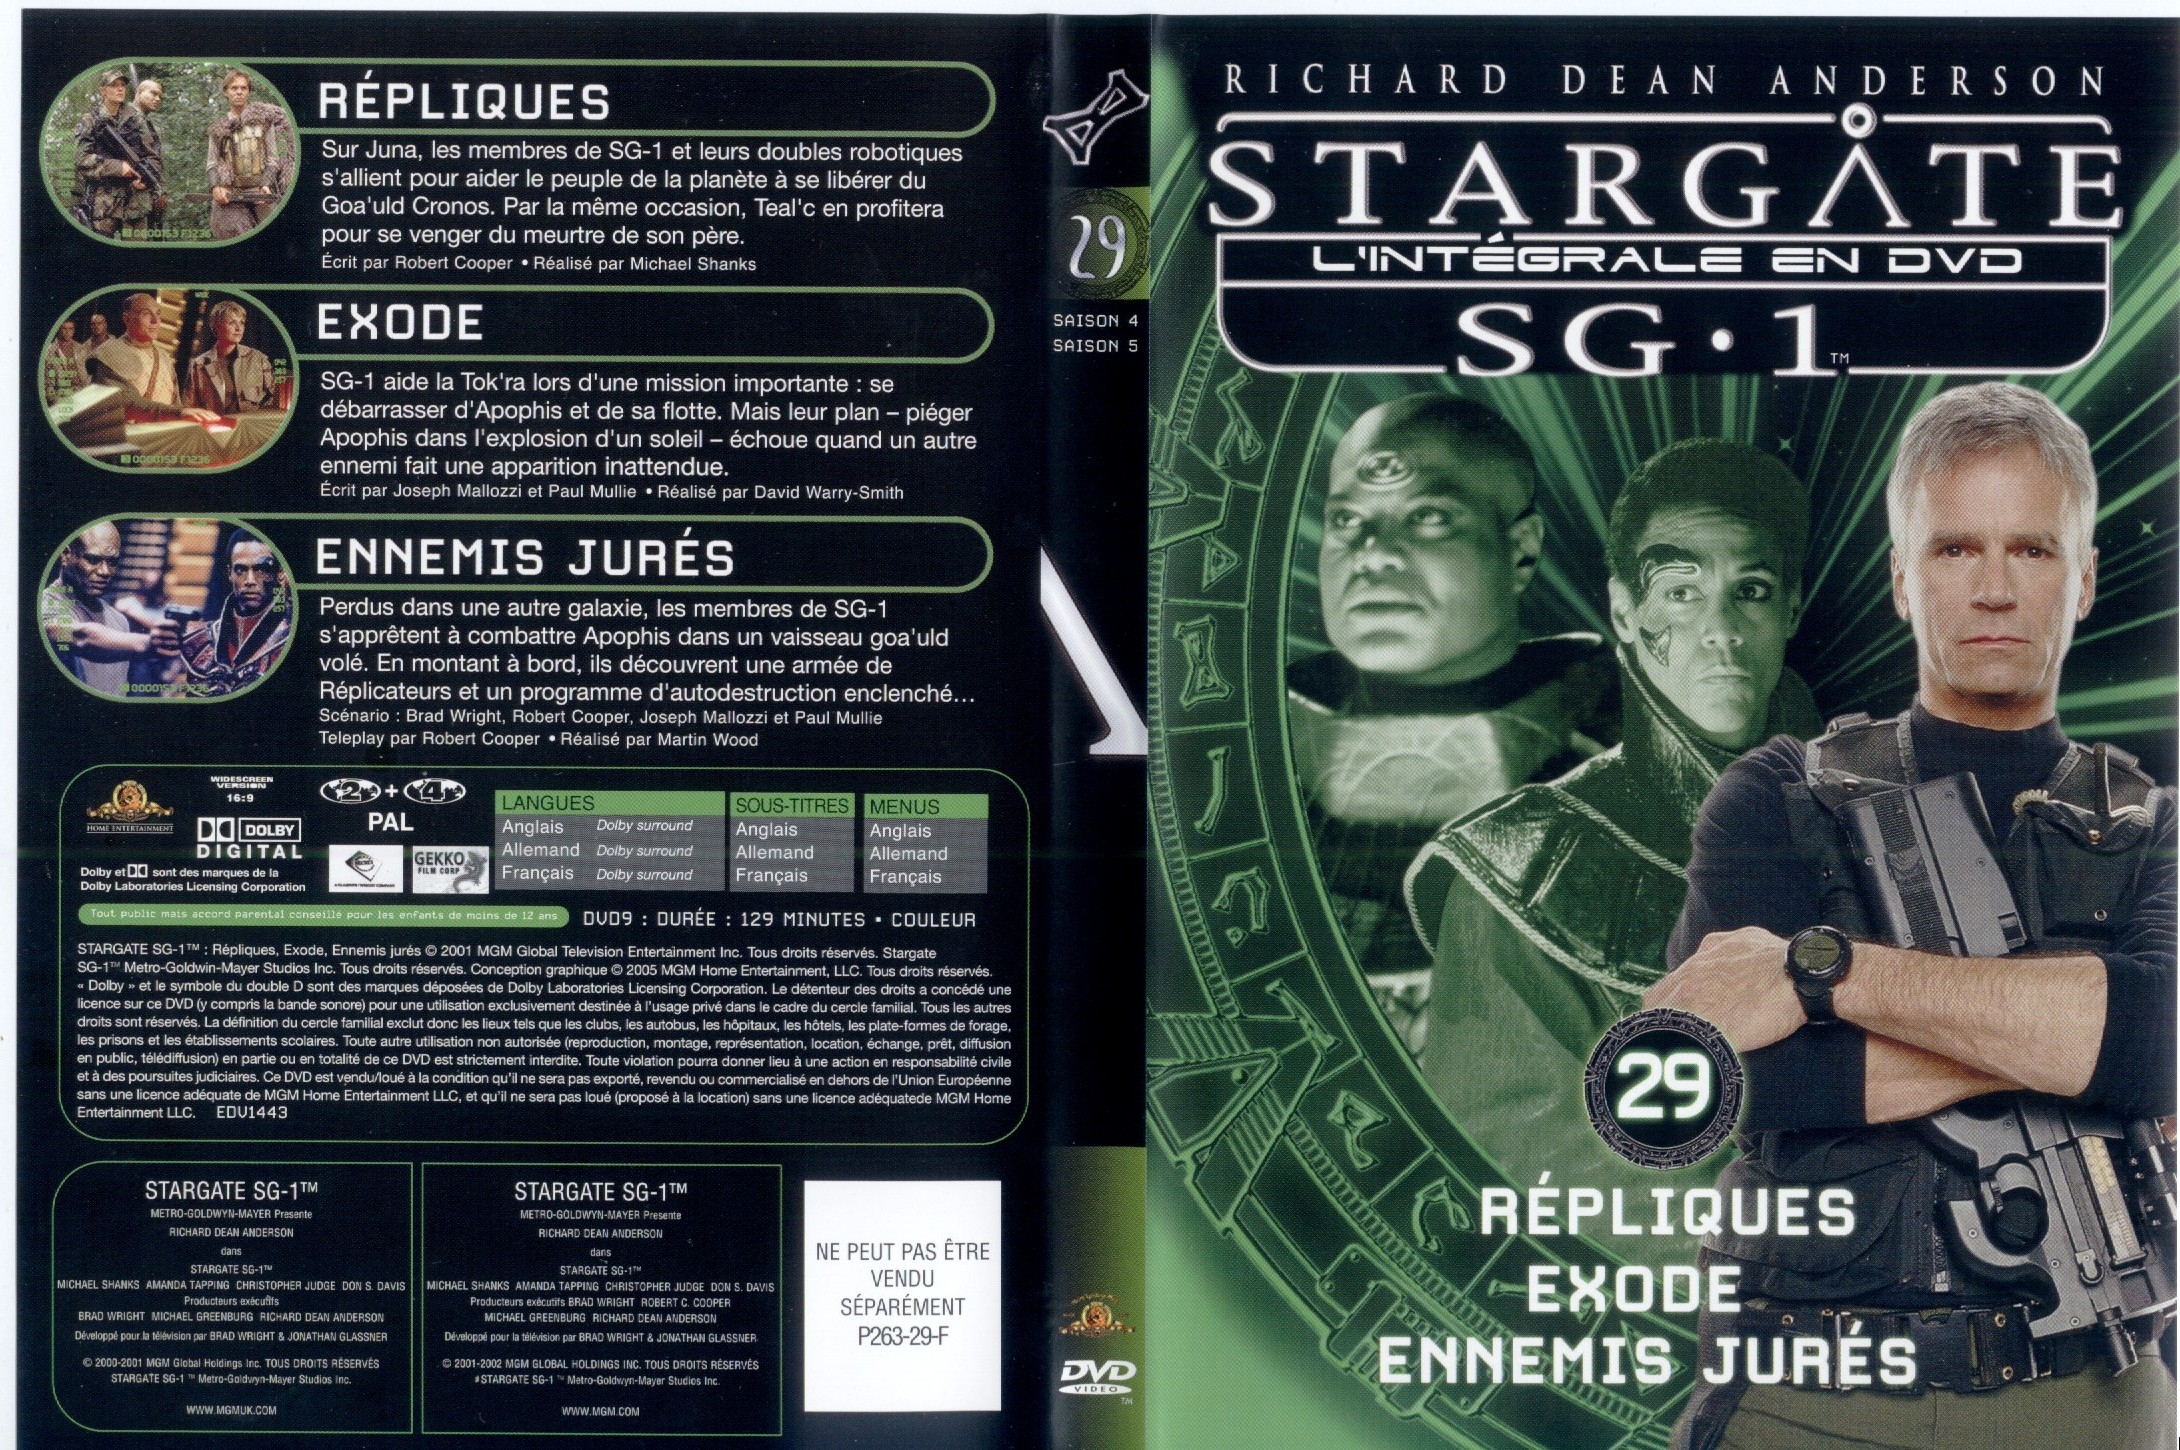 Jaquette DVD Stargate saison 4 et 5 vol 29